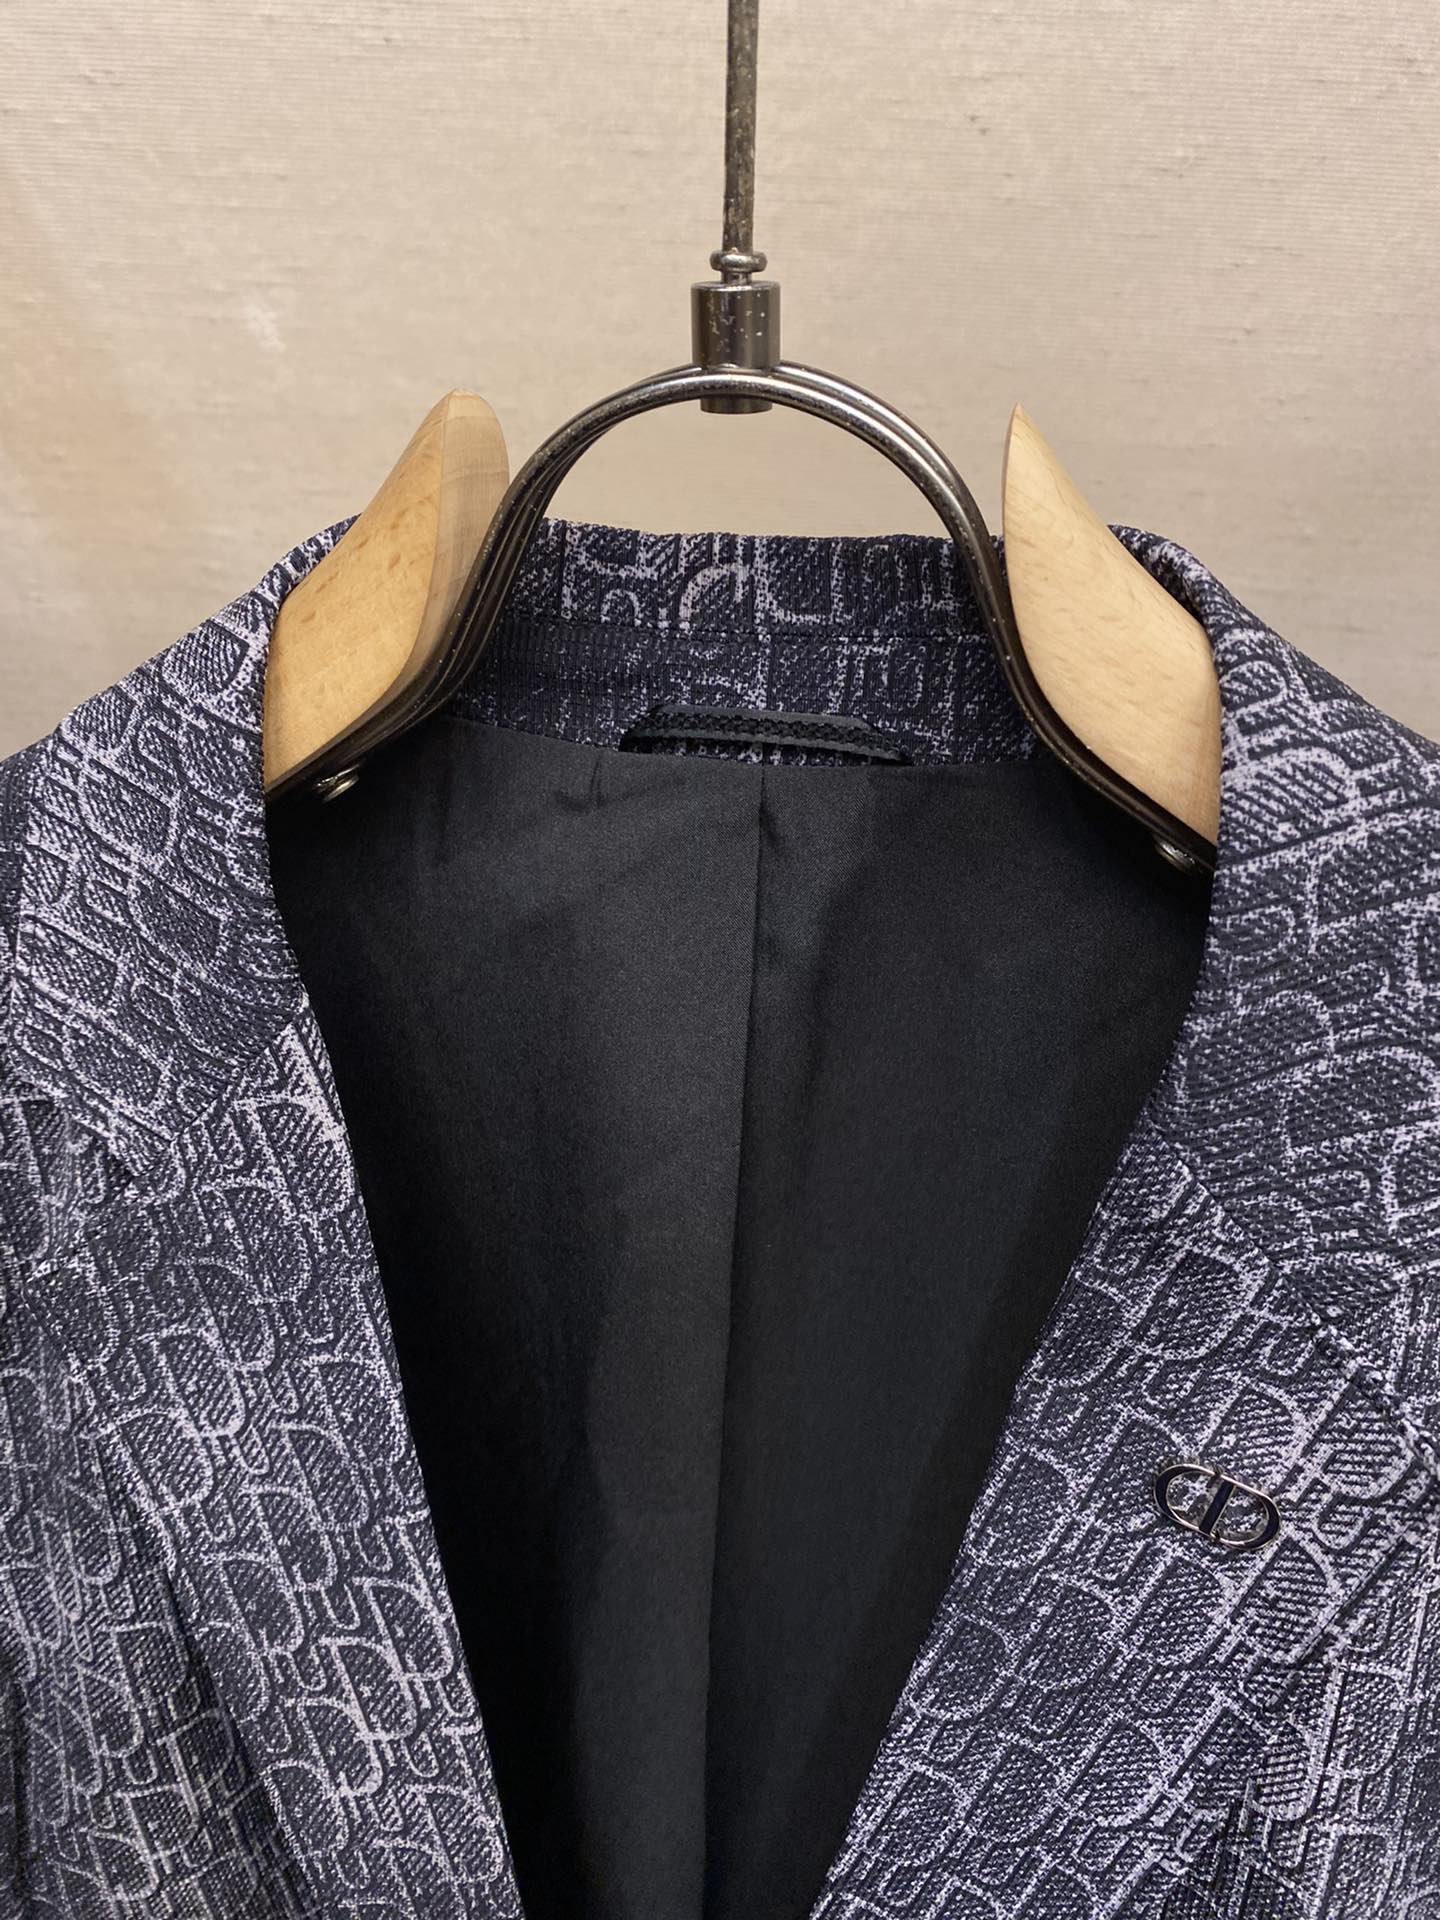 Dior男士时装款西服外套经典伦敦高端系列！整体的造型走简约的路线大体无过多元素干扰但细节方面颇为出色吸